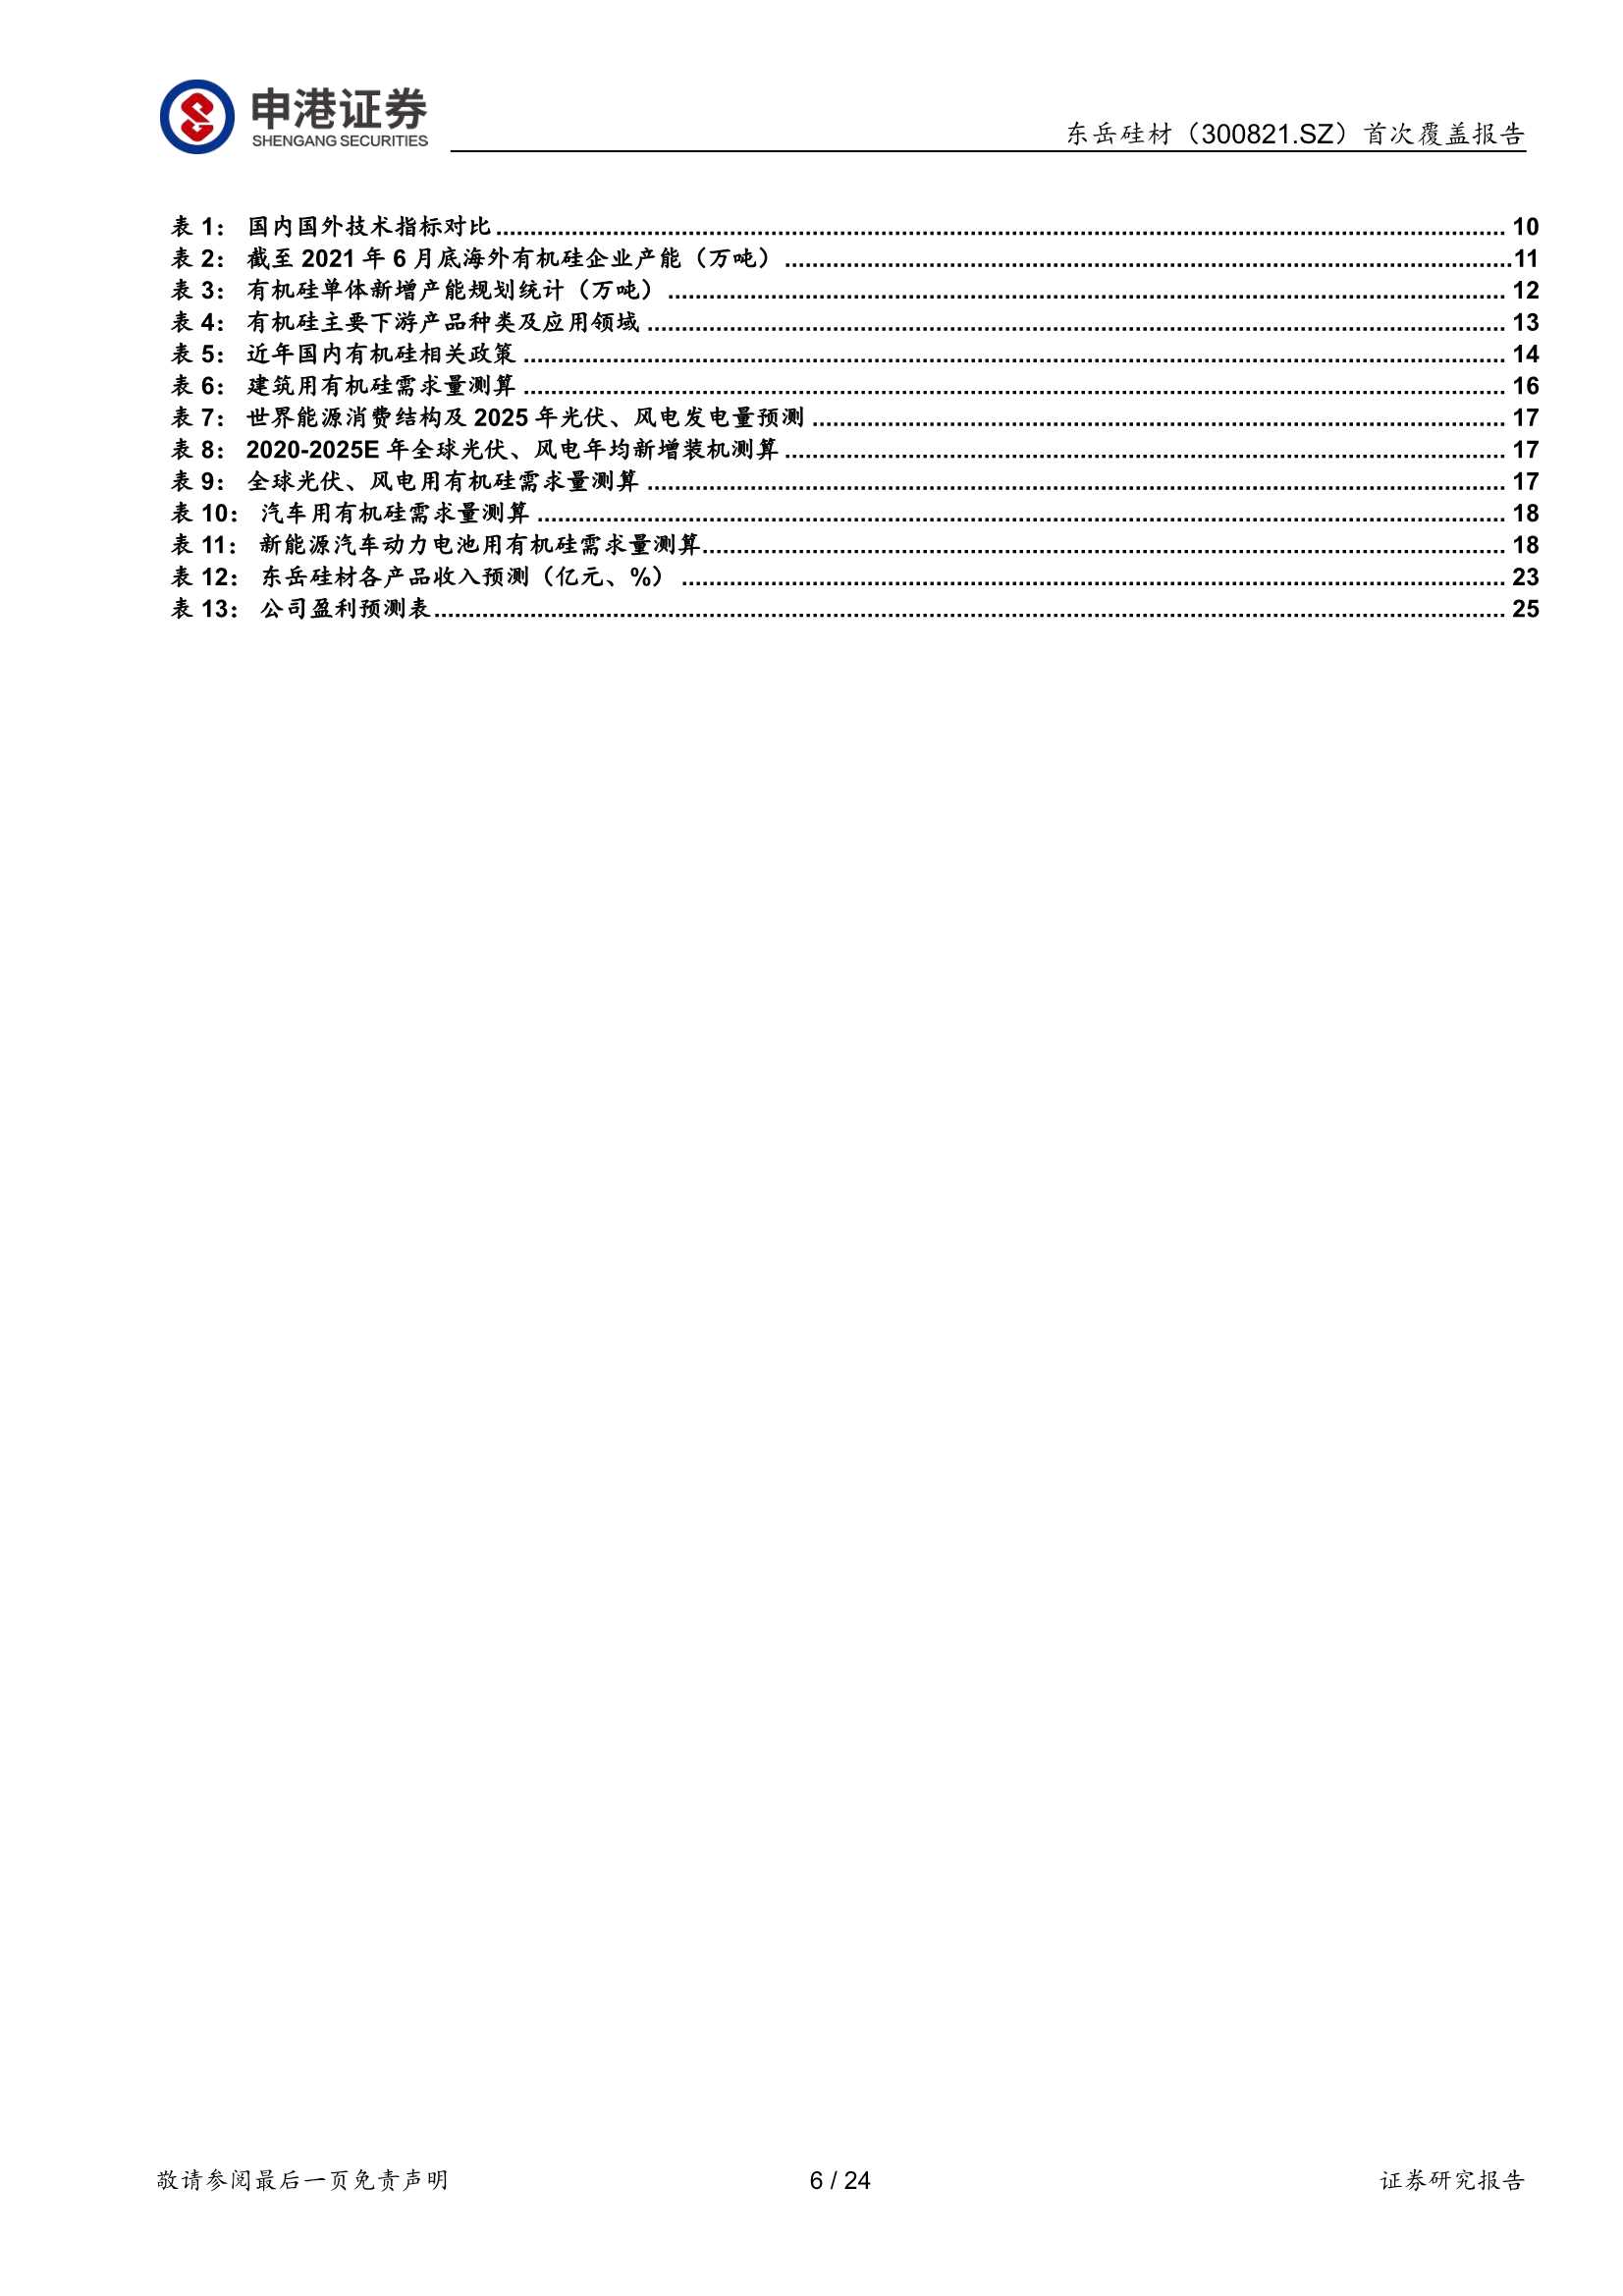 东岳硅材-300821-周期与成长并行，深加工产品空间广阔-20220426-申港证券-24页